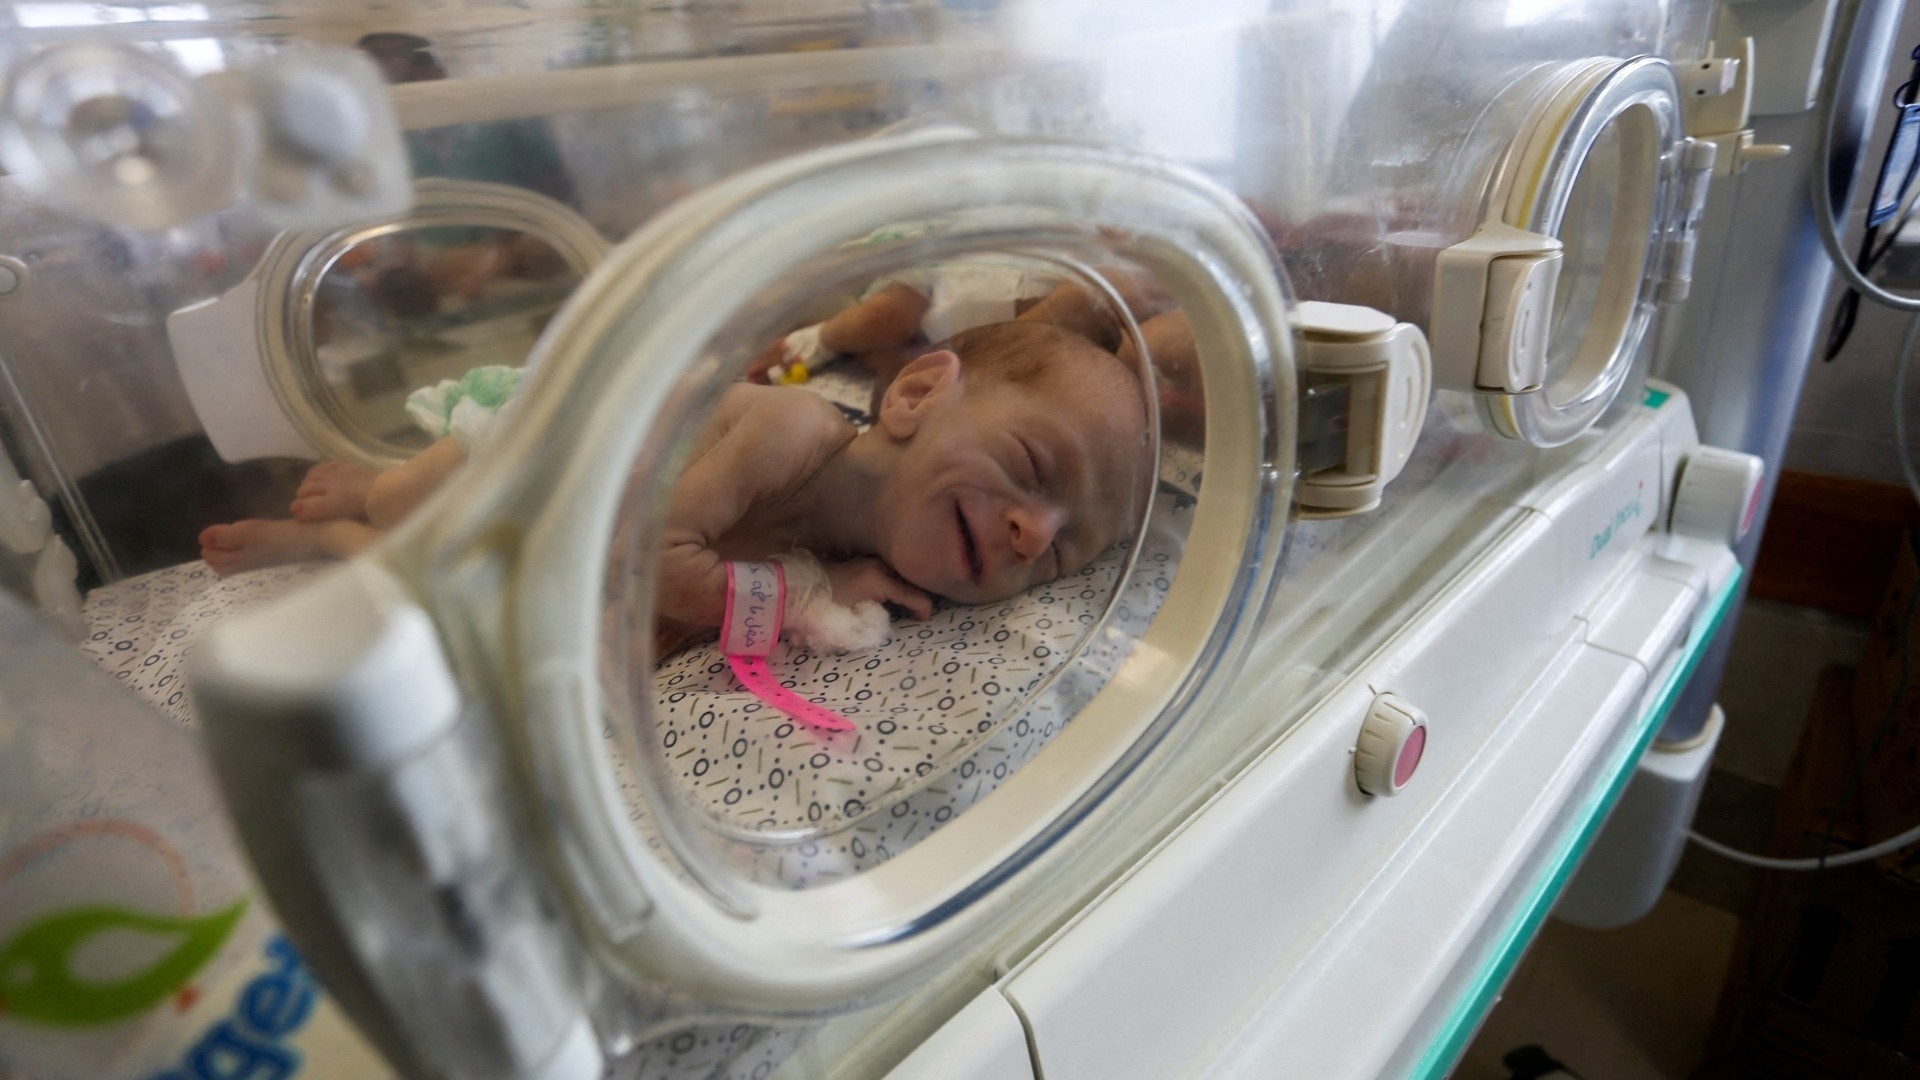 Dimanche 19 novembre, les 31 bébés prématurés qui se trouvaient encore dans l’hôpital al-Chifa de Gaza ont été évacués vers l’Égypte. L’annonce de la mort de plusieurs prématurés dans le même hôpital la semaine dernière, à la suite de l’arrêt des couveuses, avait provoqué un véritable choc (Reuters)